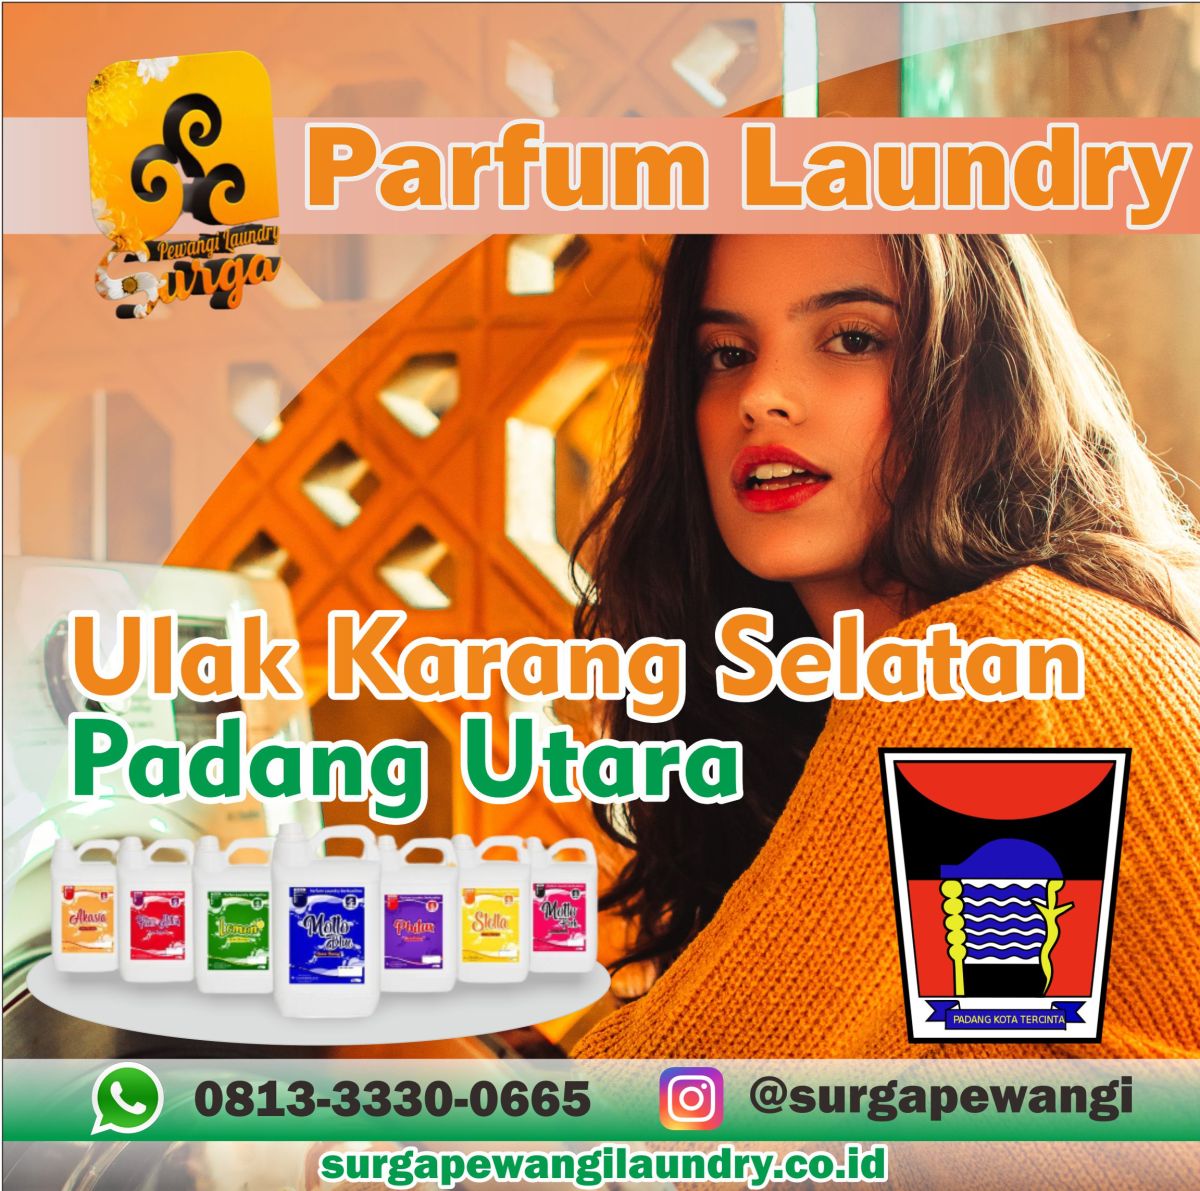 Parfum Laundry Ulak Karang Selatan, Padang Utara